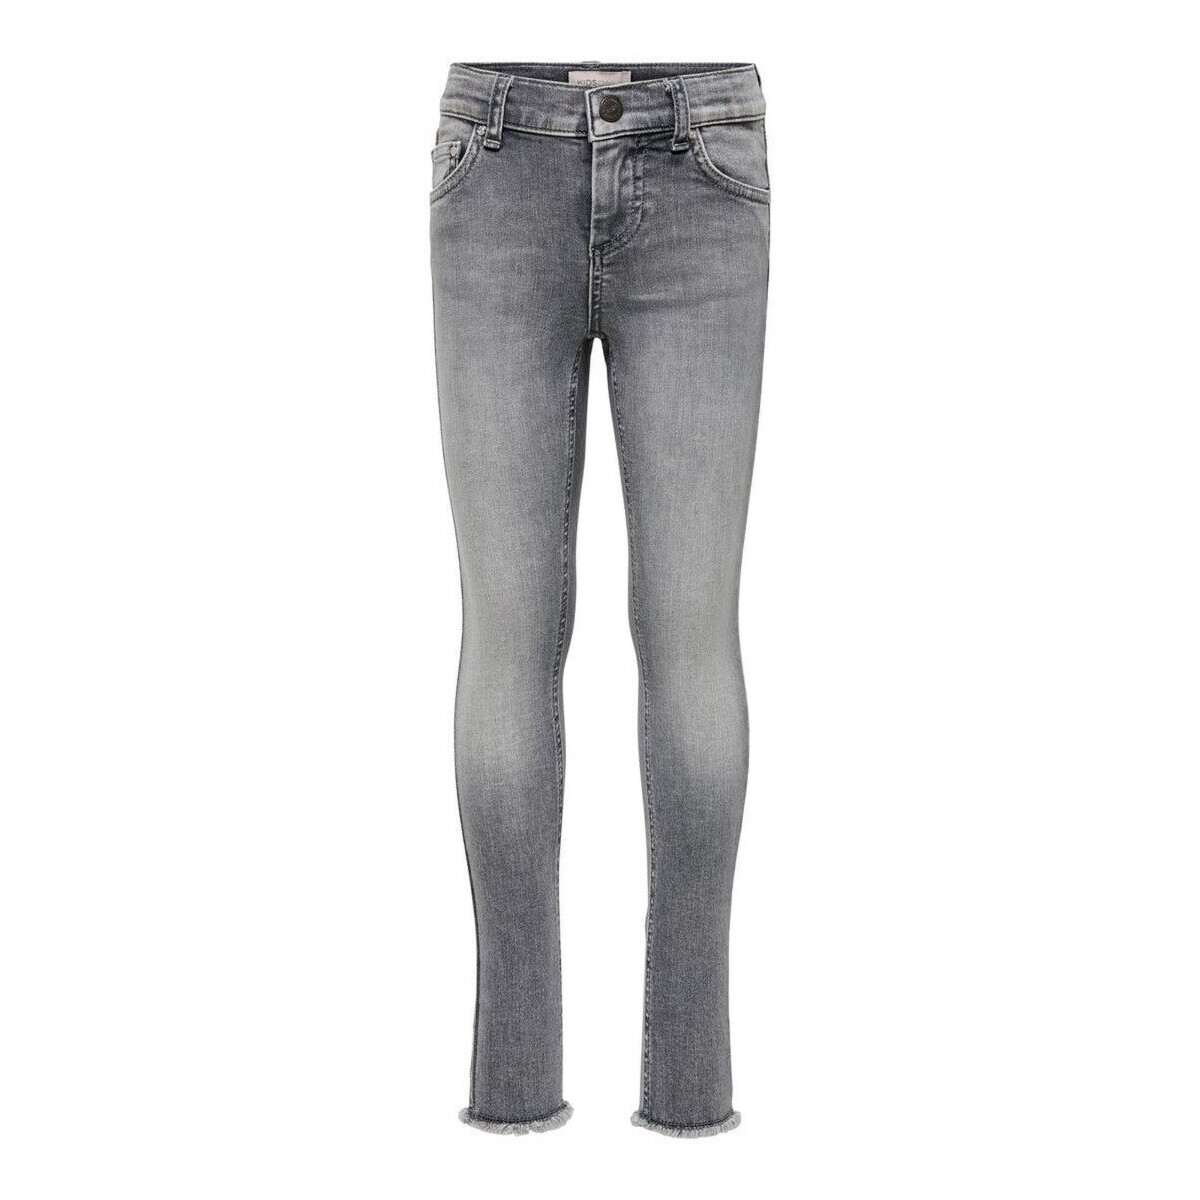 Vêtements Fille Jeans Only 15173843 BLUSH-GREY DENIM Gris